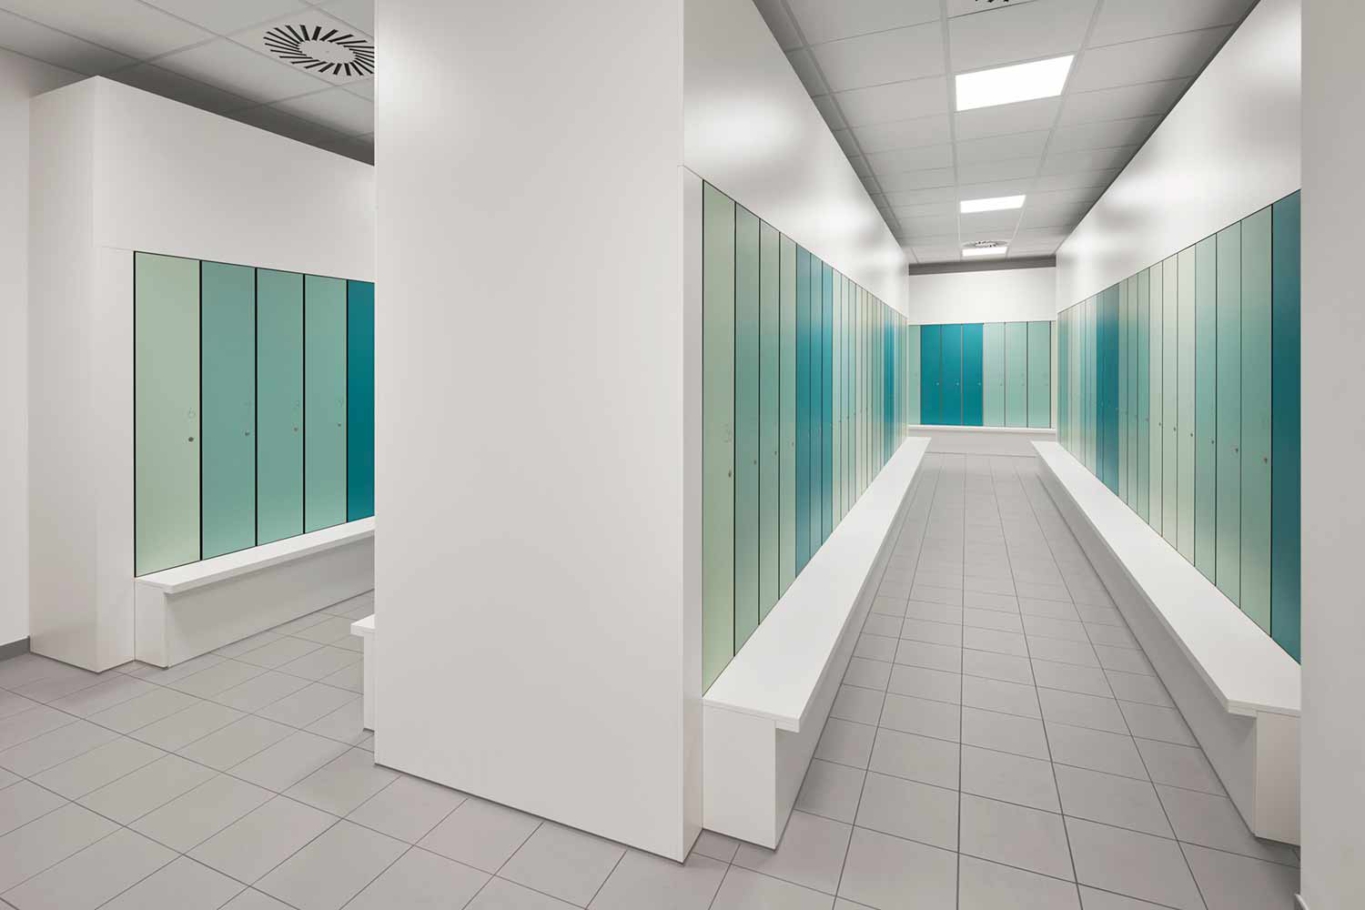 Interiorfotografie Lioba Schneider: Blick in die Garderoben mit zahlreichen Spinden in verschiedenen Grün-Blau-Tönen, entstanden beim Umbau L´Oréal in Karlsruhe.